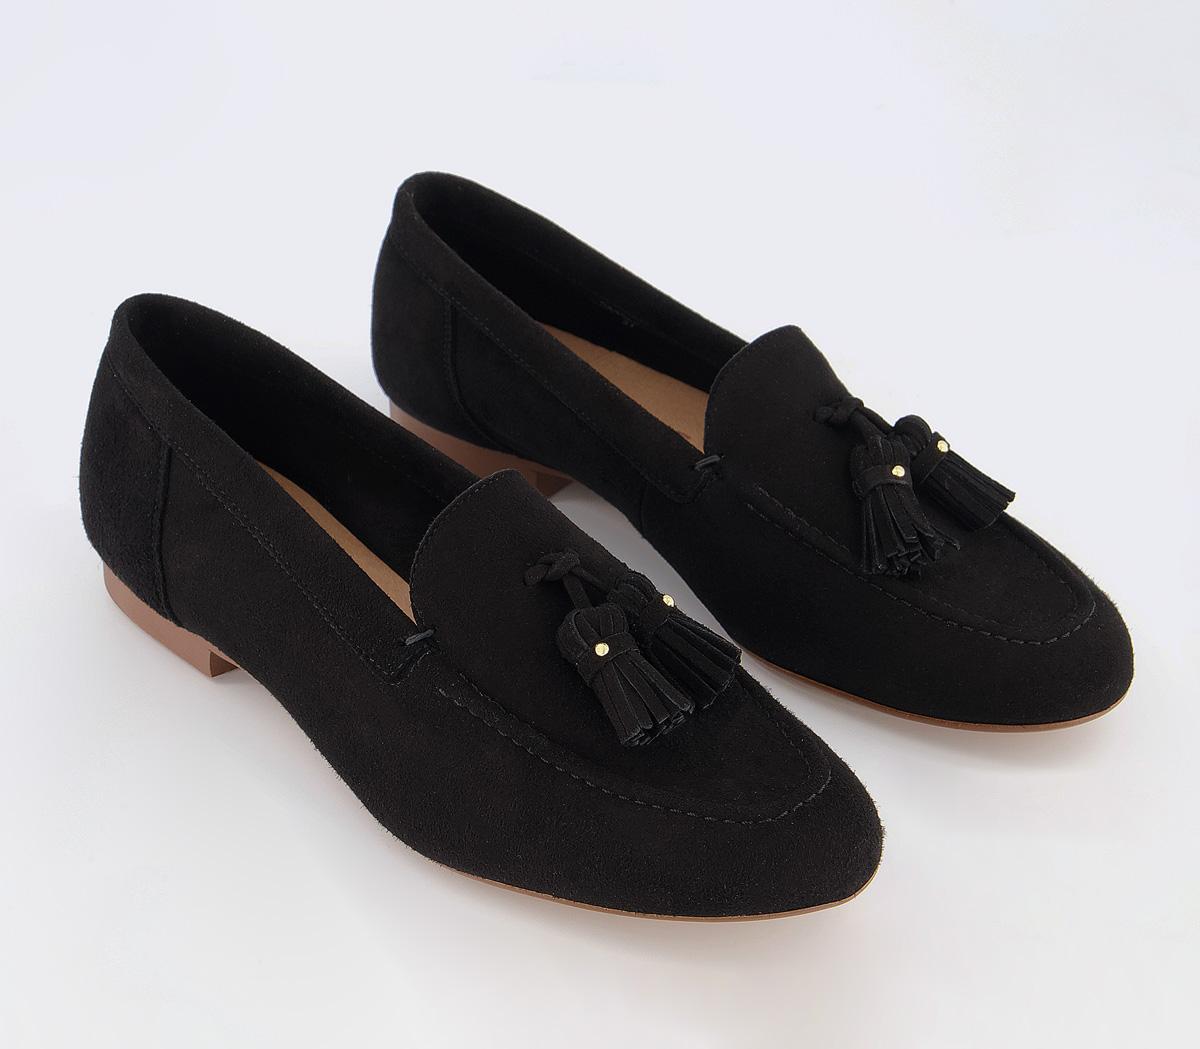 Office Retro Tassel Loafers Black Suede - Women’s Loafers